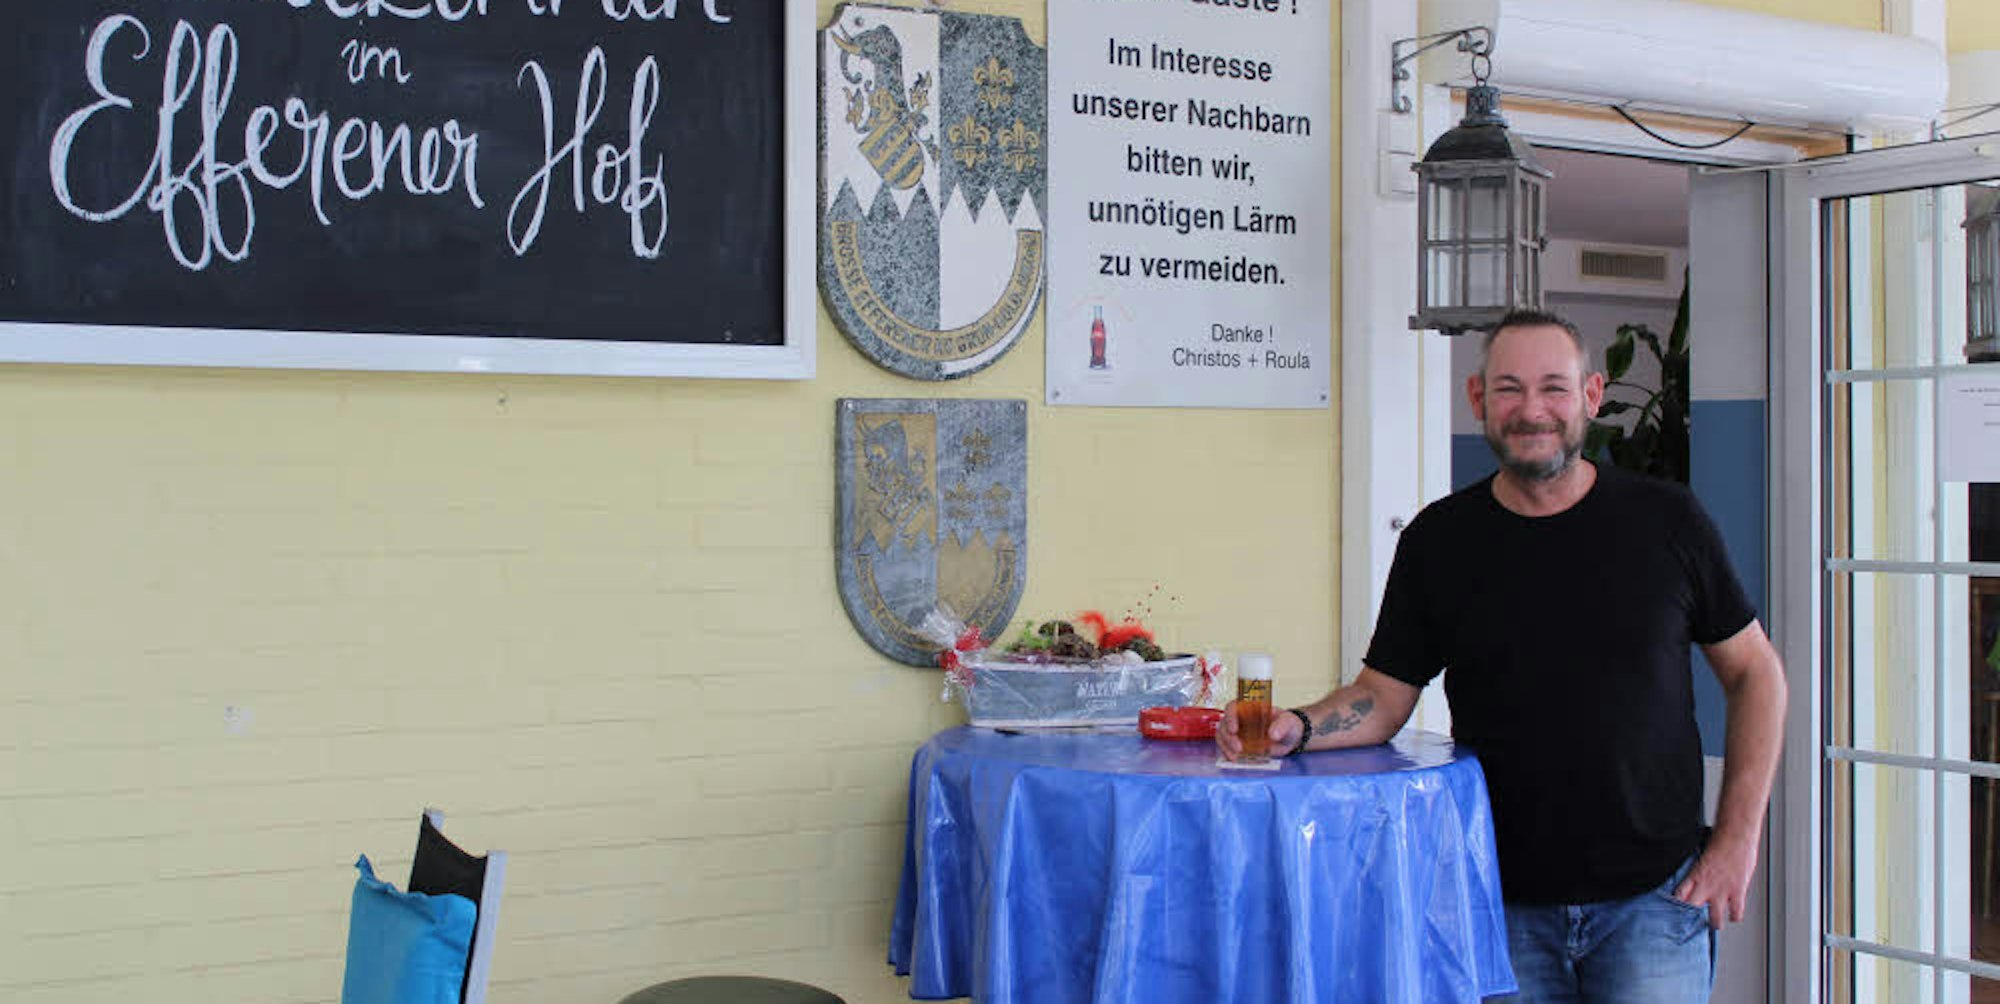 Werner Schnöring ist seit 1991 in der Gastronomie. Den „Efferener Hof“ führt er seit rund drei Monaten.